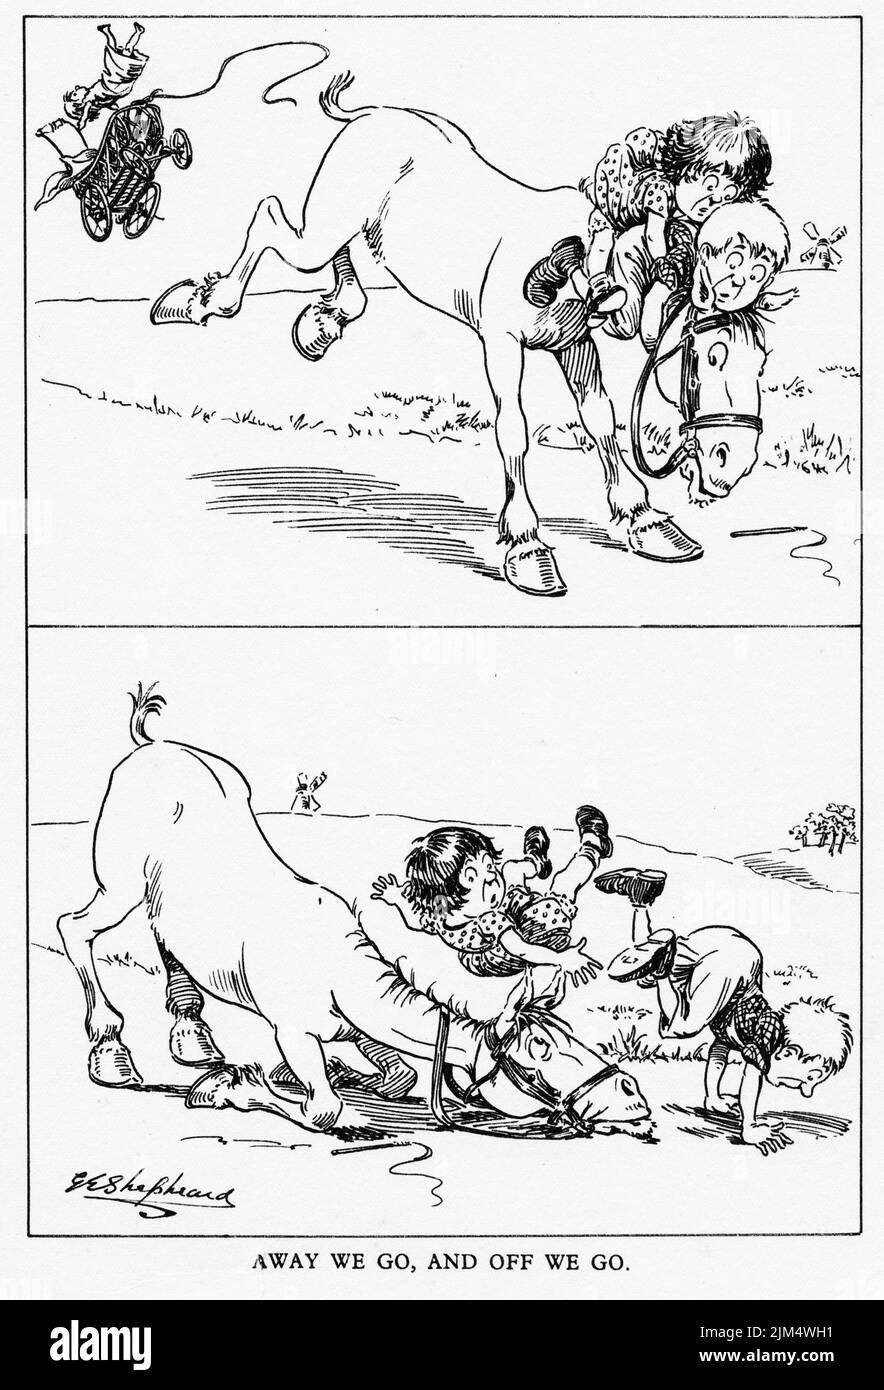 Illustration de style dessin animé de deux enfants tombant d'un cheval Banque D'Images